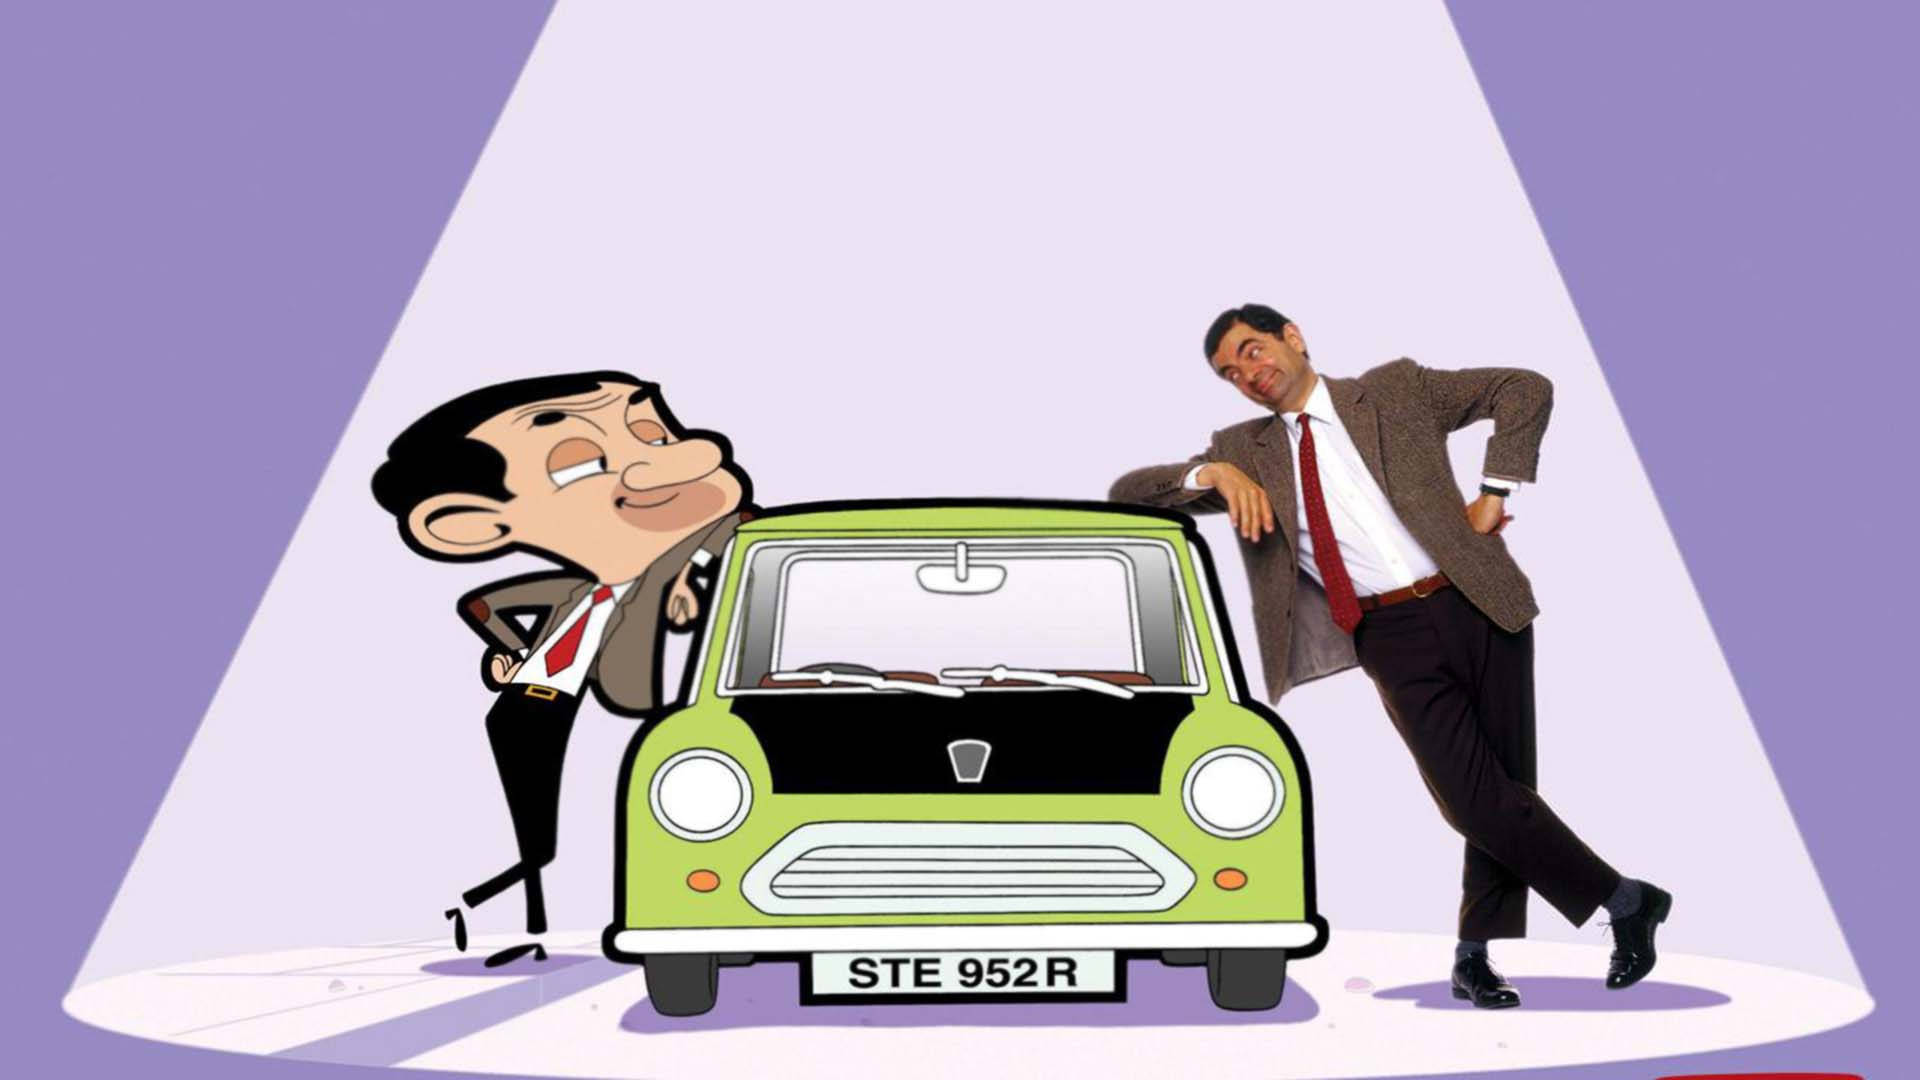 Mr Bean Background